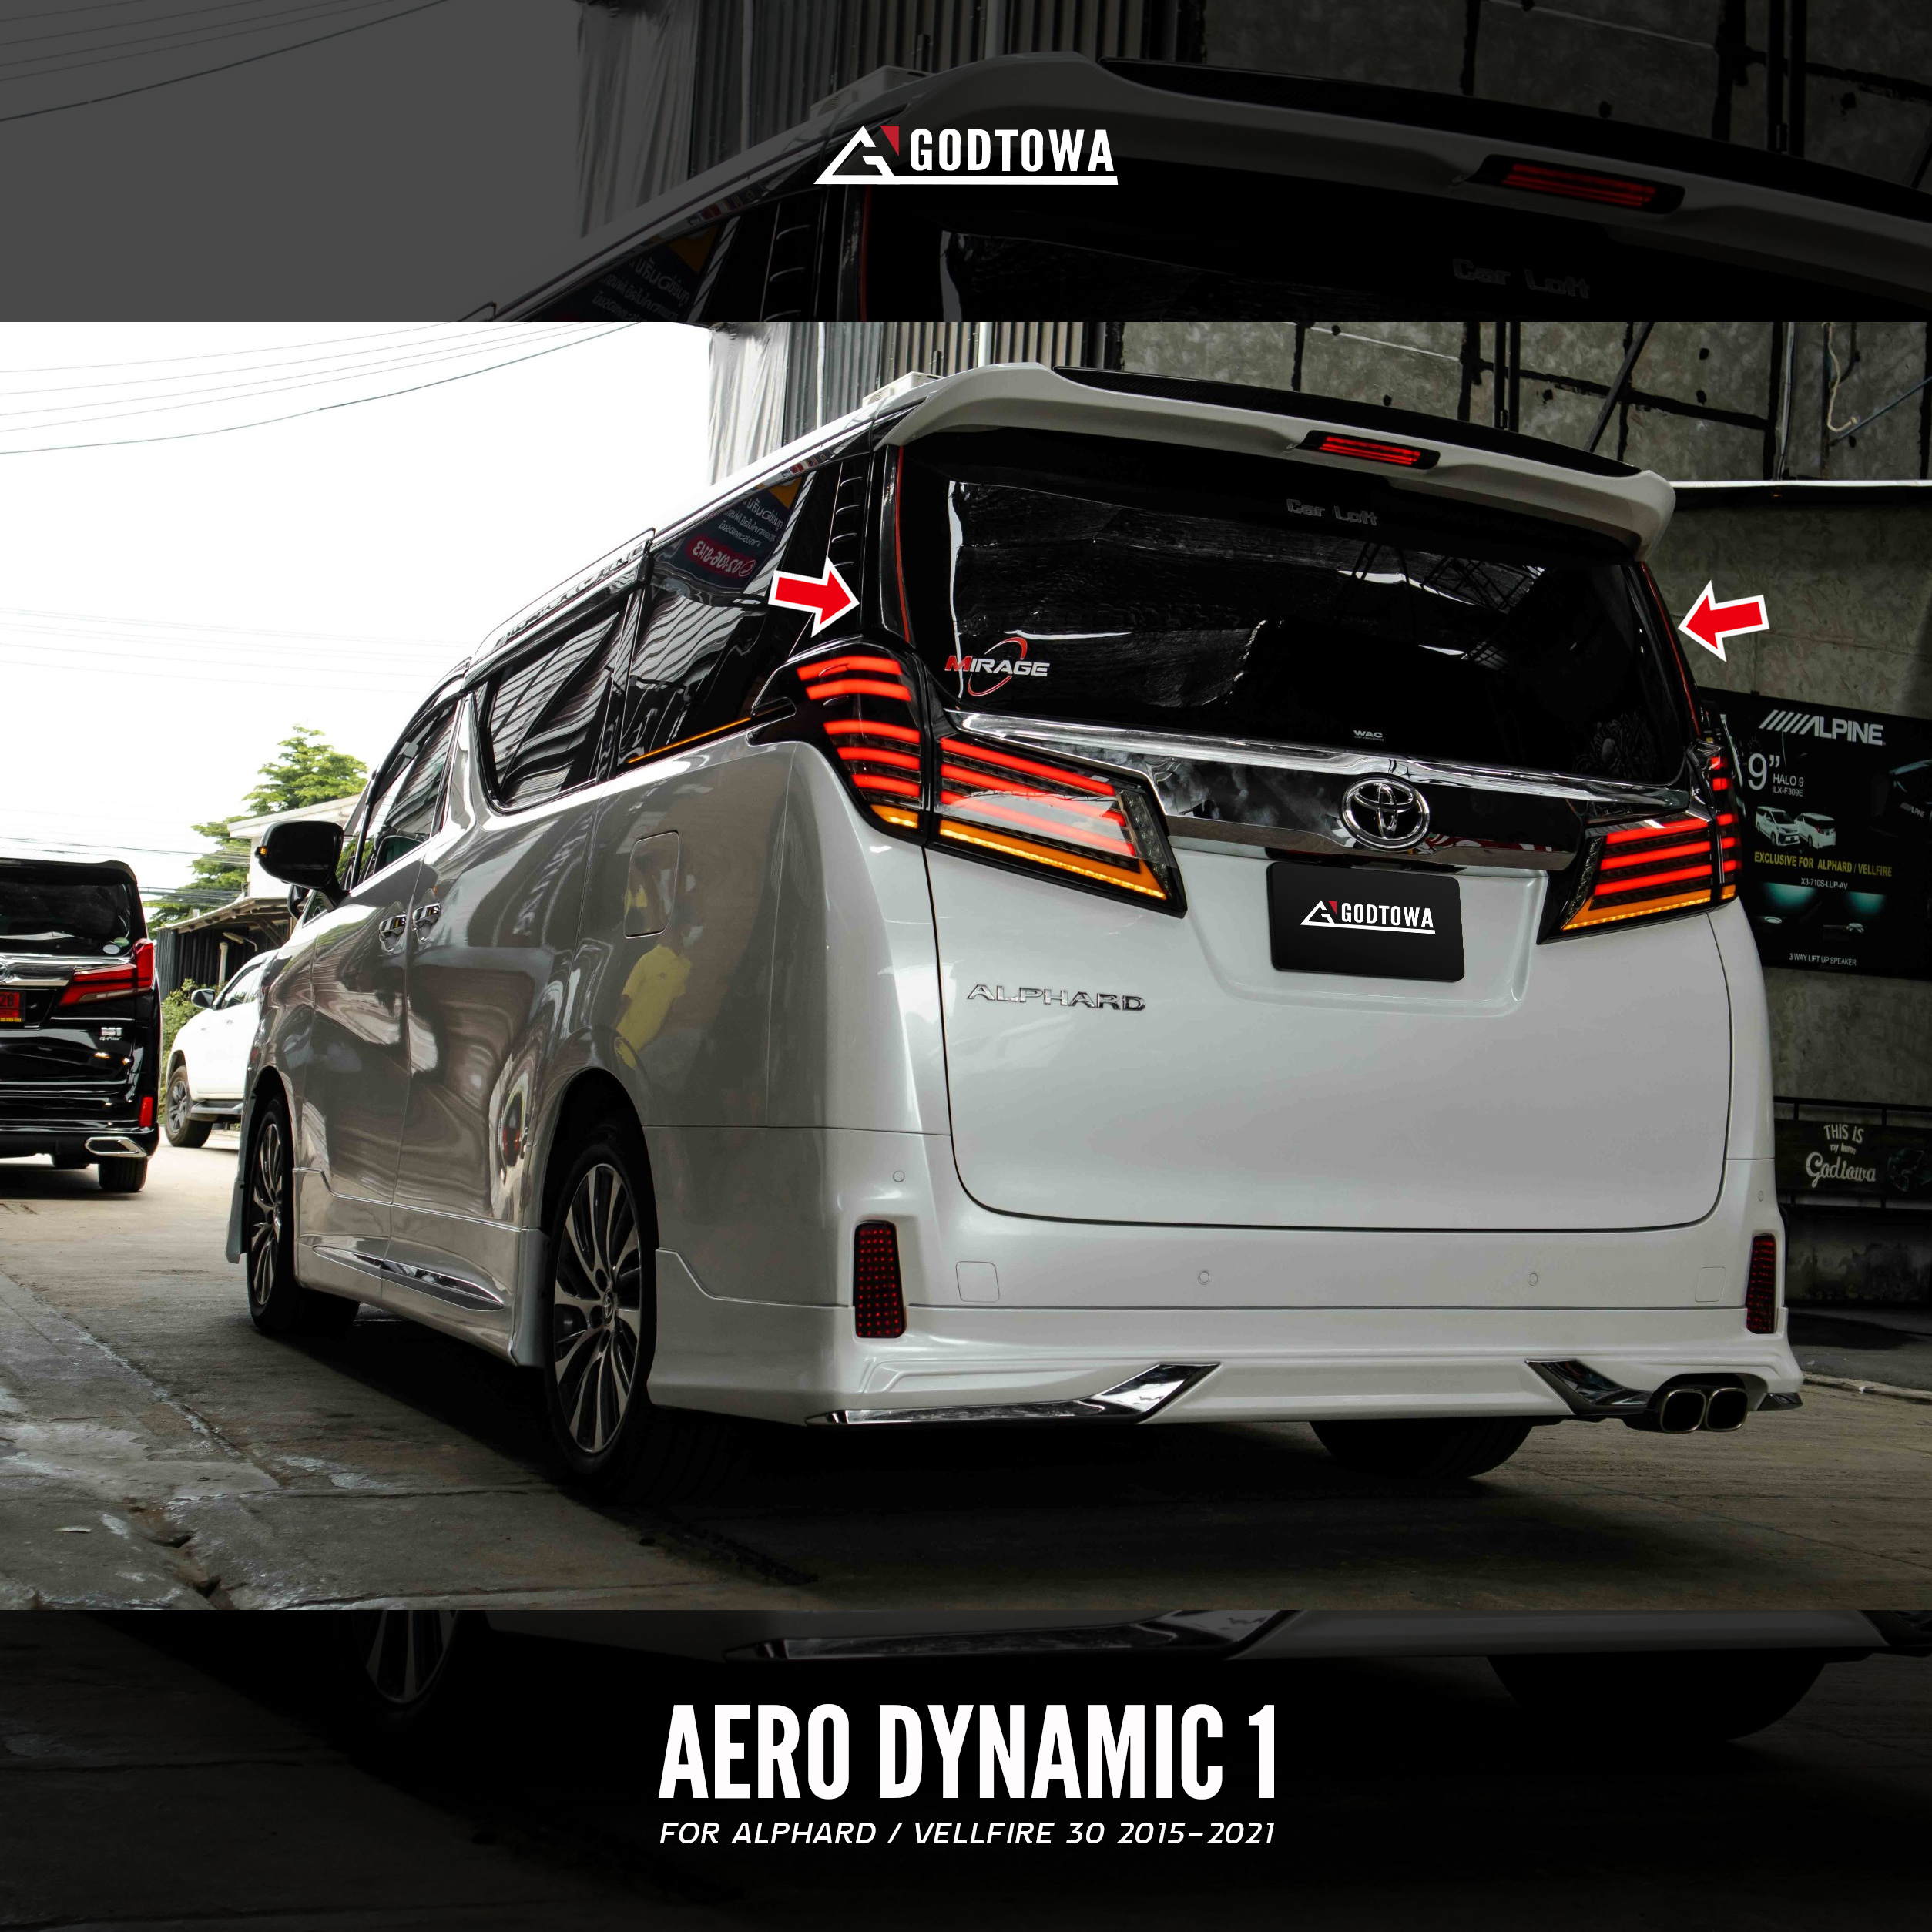 อุปกรณ์เสริมลดแรงปะทะของลมสำหรับรถอัลพาร์ด เวลไฟร์(ALPHARD VELLFIRE) แอโรว์ไดนามิค 1 ลู่ลมอัลพาร์ด เวลไฟร์ AERODYNAMIC ONE สำหรับรถยนต์ ALPHARD/VELLFIRE 30 รุ่นปี 2015-2021